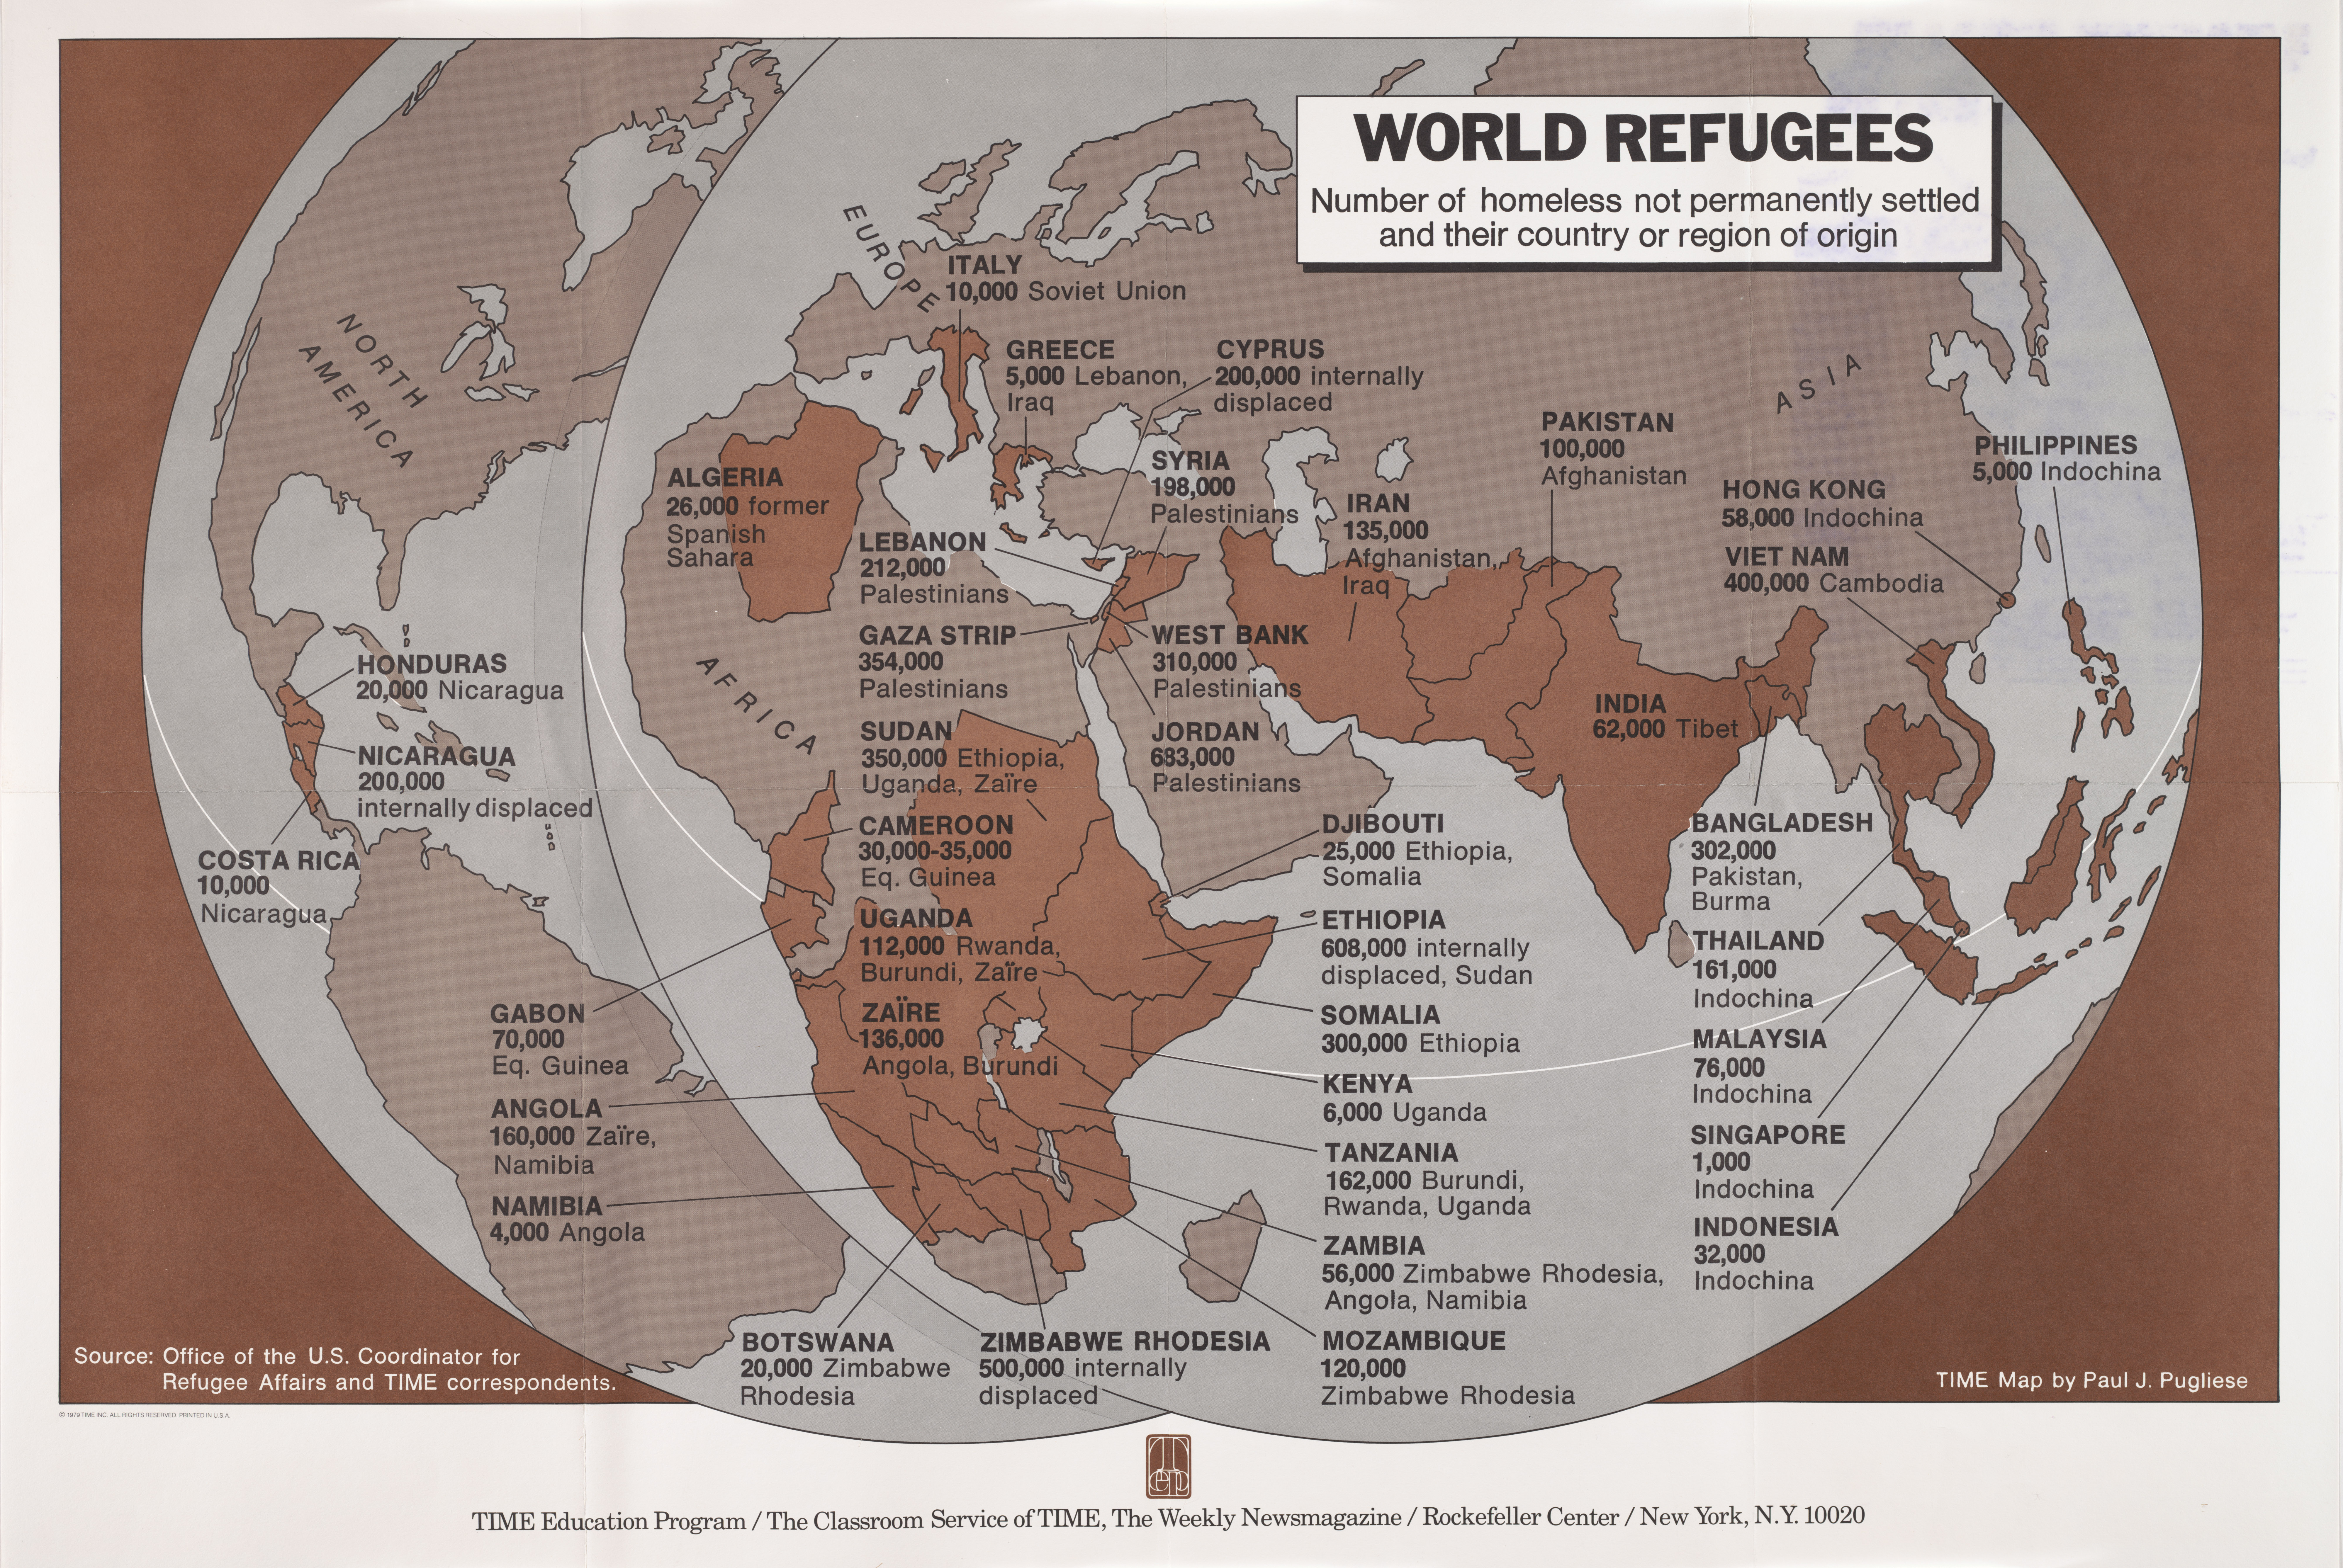 Los refugiados en el mundo (1979)